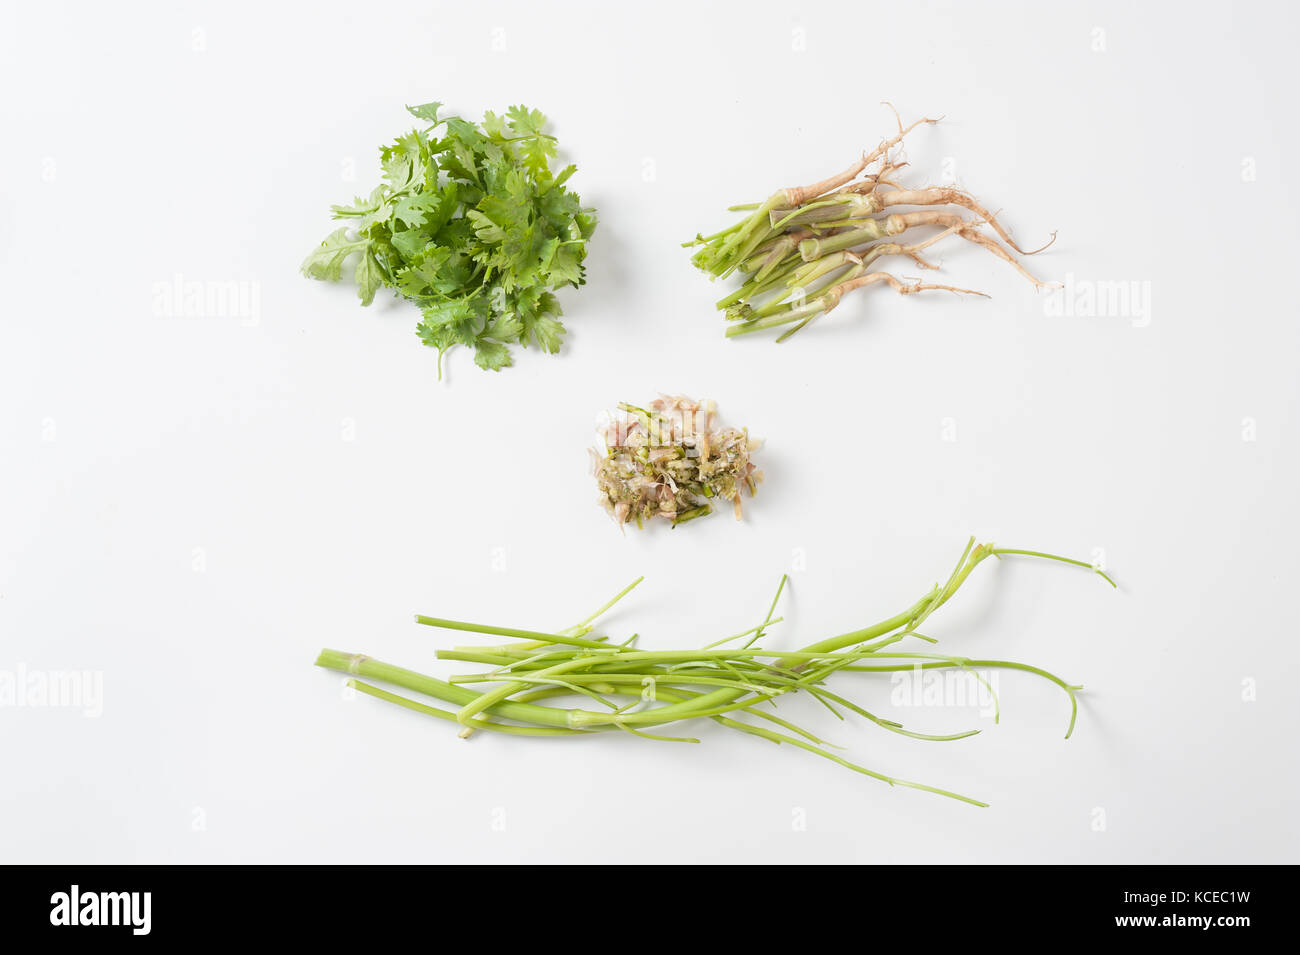 La coriandre (Coriandrum sativum) ou persil chinois inculding éléments feuilles, racines, tiges, et le frappa la coriandre mélanger avec l'ail sur fond blanc. Banque D'Images